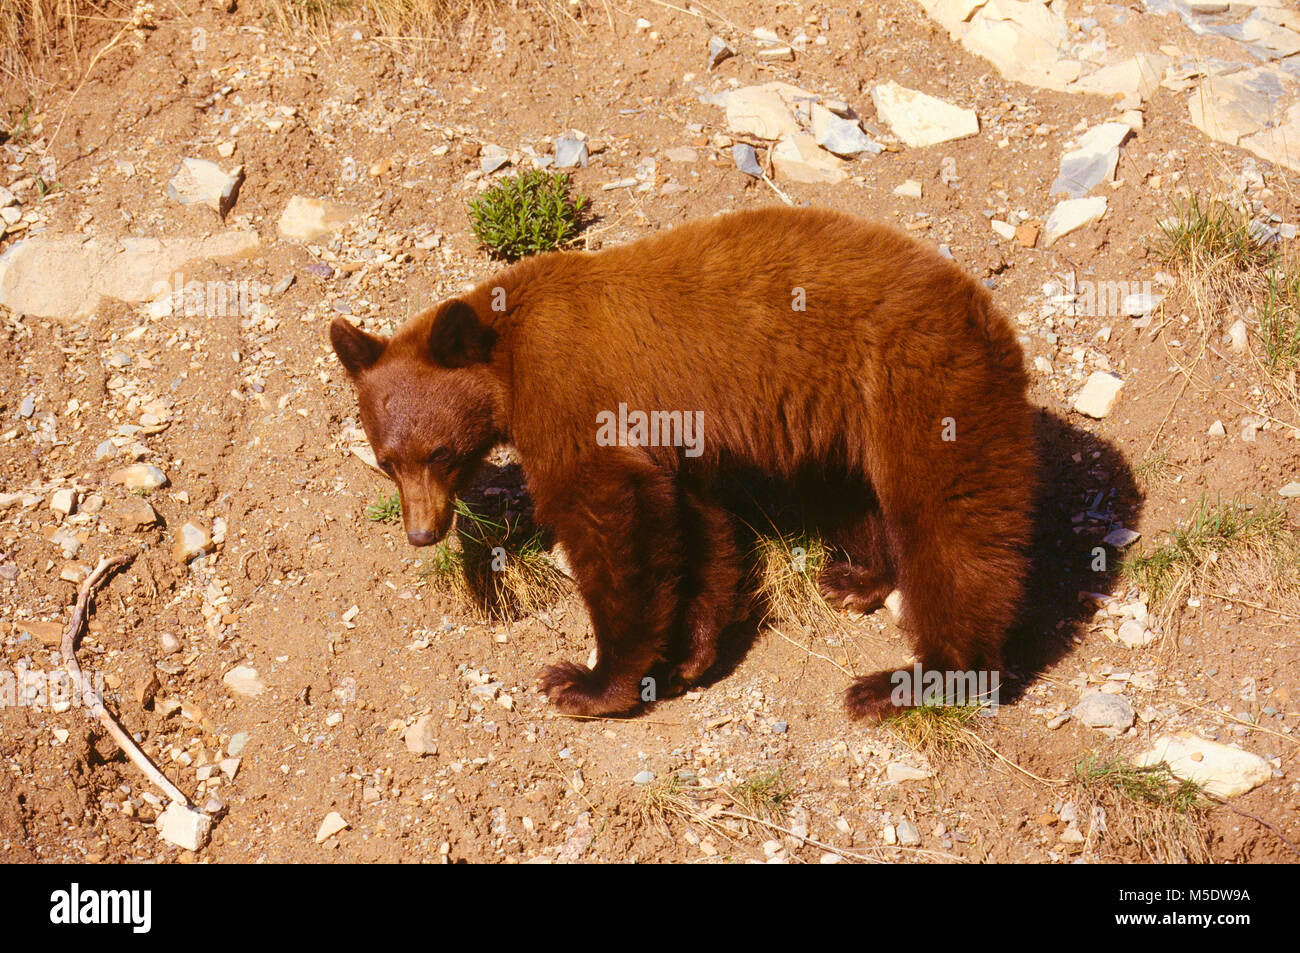 Oso Negro Ursus americanus, Ursidae, redbrown mutante, el oso, el mamífero, animal, Parque Nacional Waterton Lakes en Alberta, Canadá Foto de stock